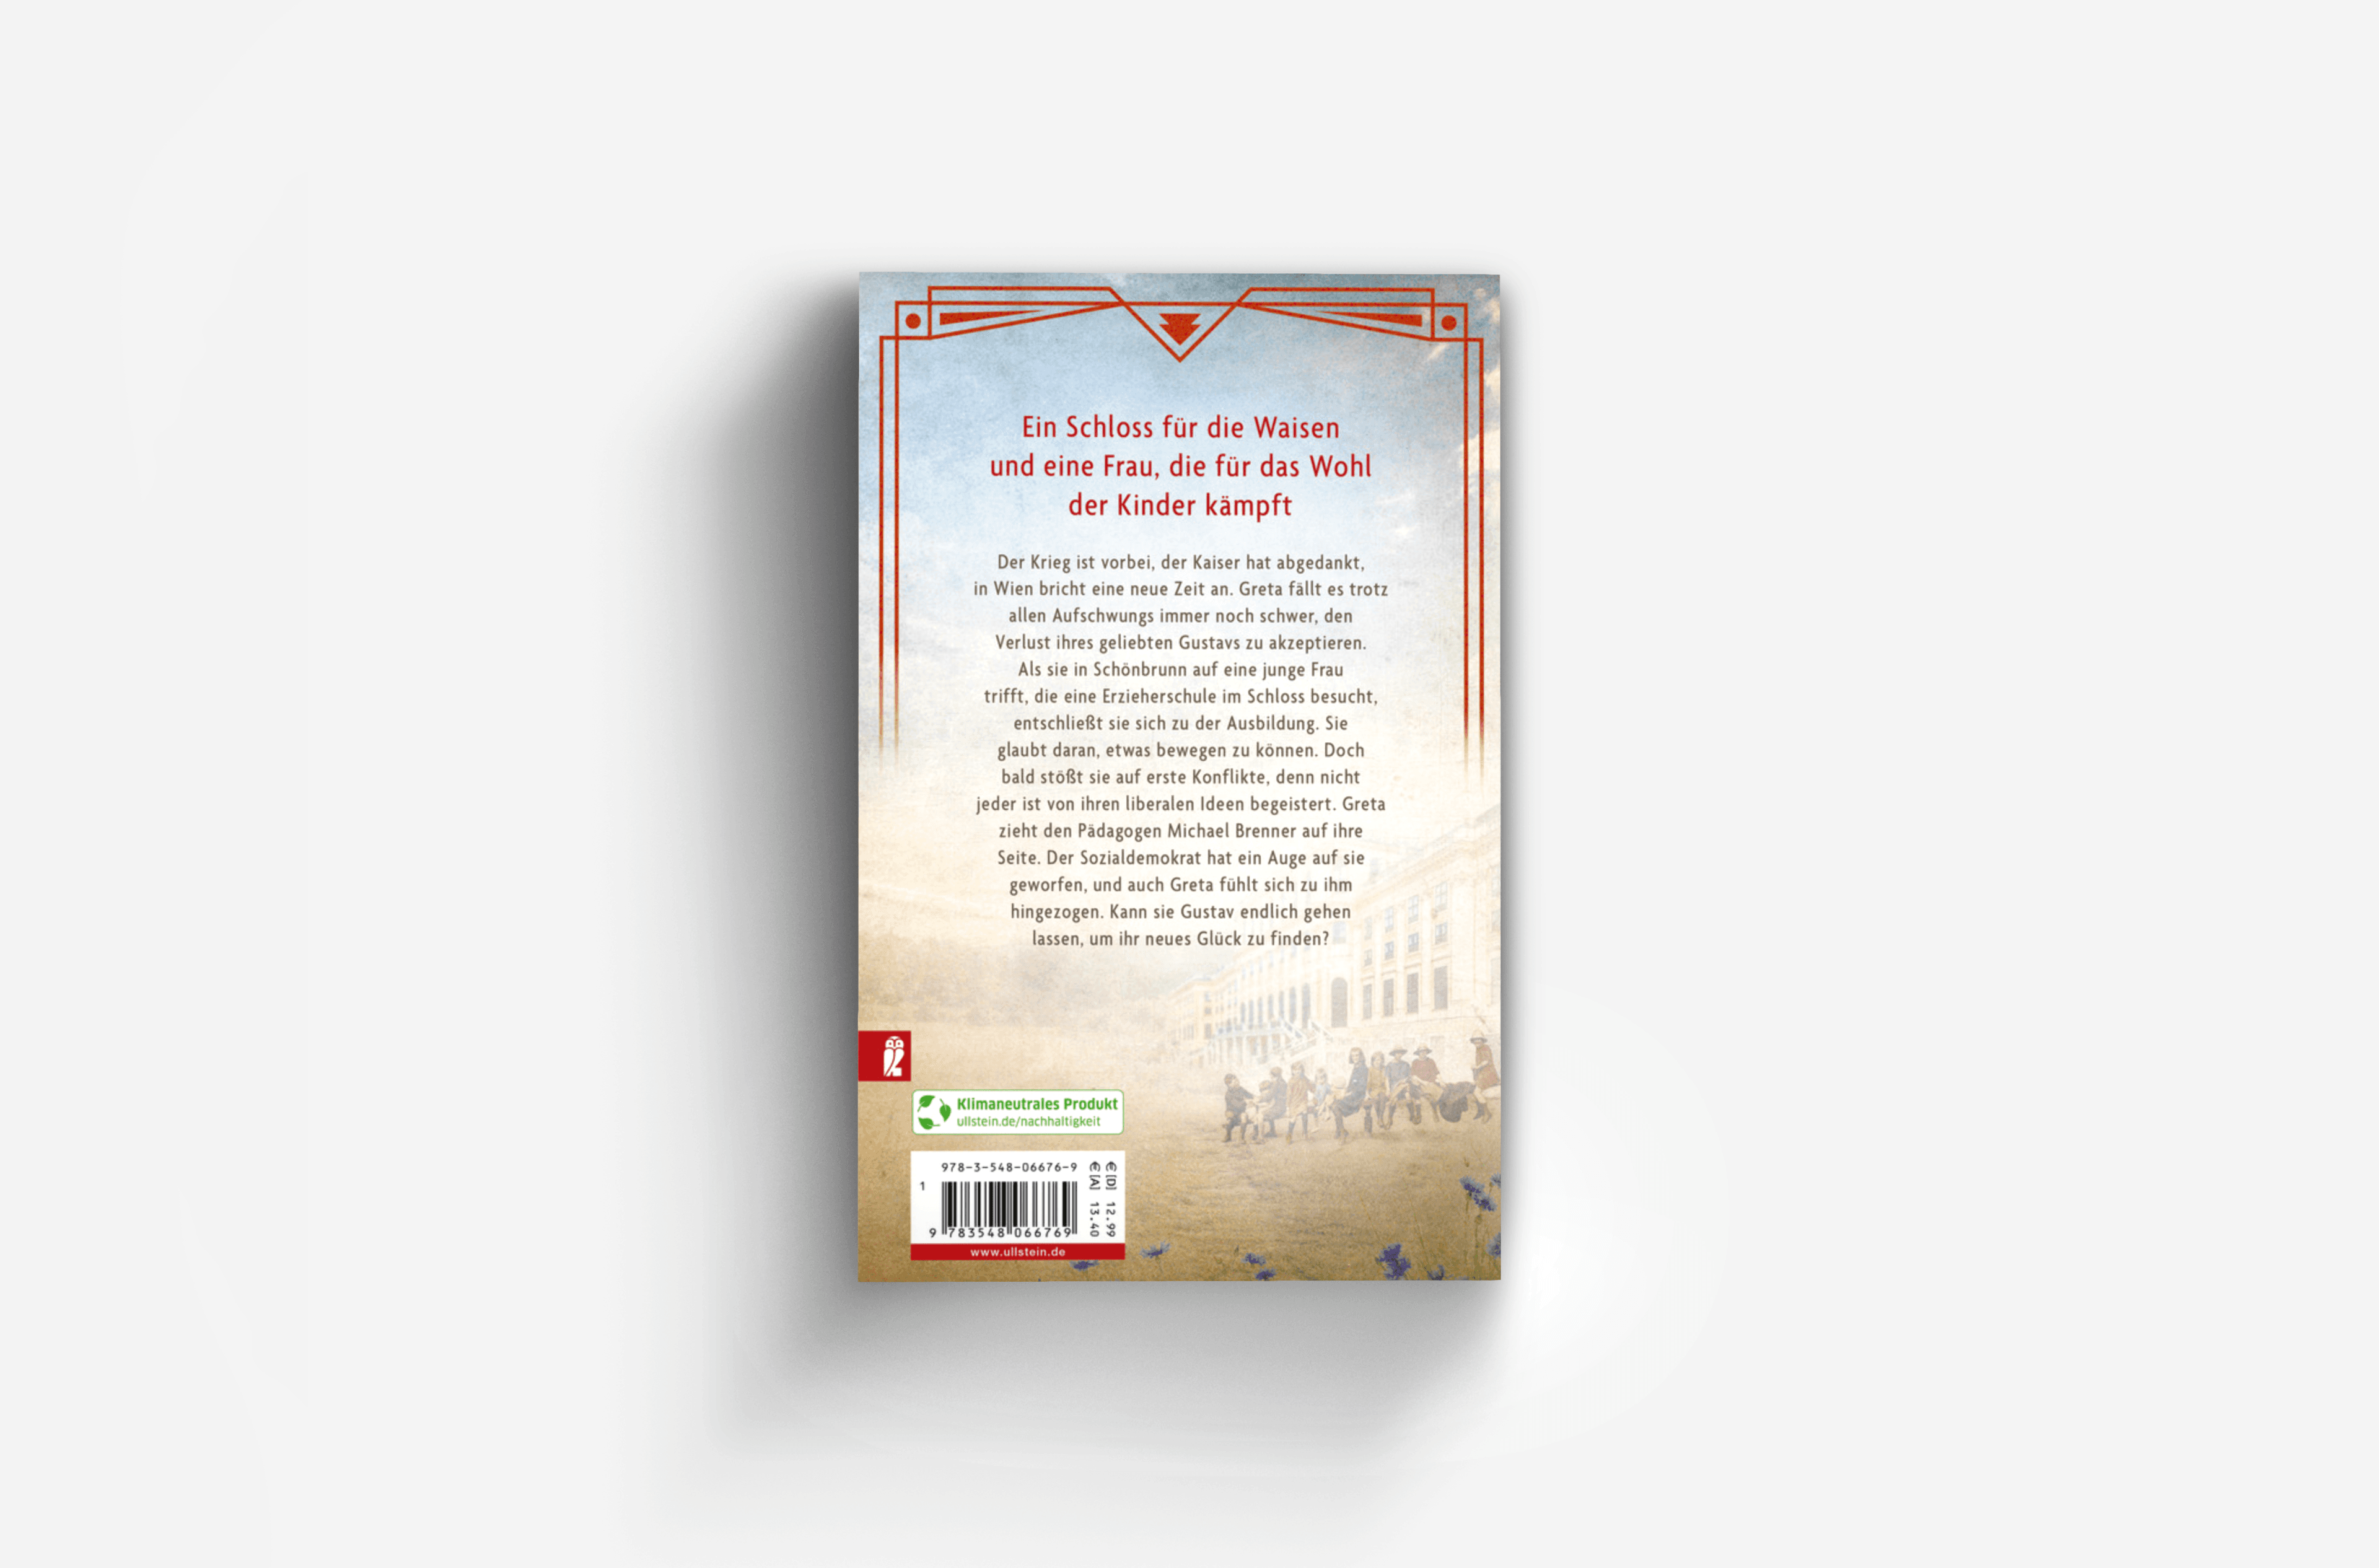 Buchcover von Die Kinder von Schönbrunn (Die Schönbrunn-Saga 2)